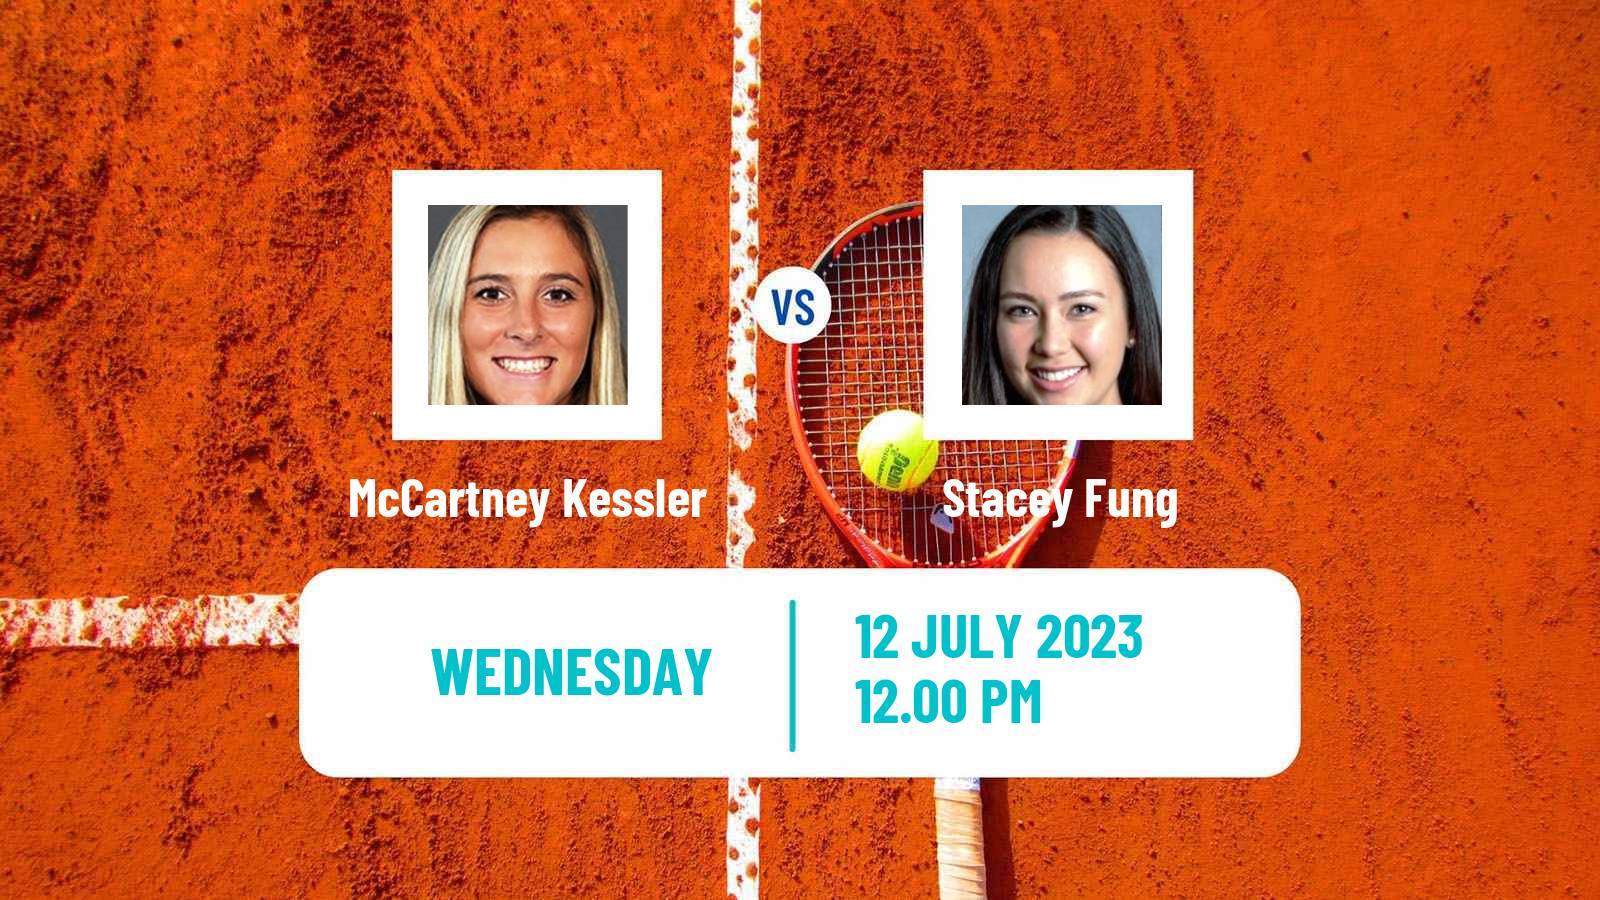 Tennis ITF W60 Saskatoon Women McCartney Kessler - Stacey Fung